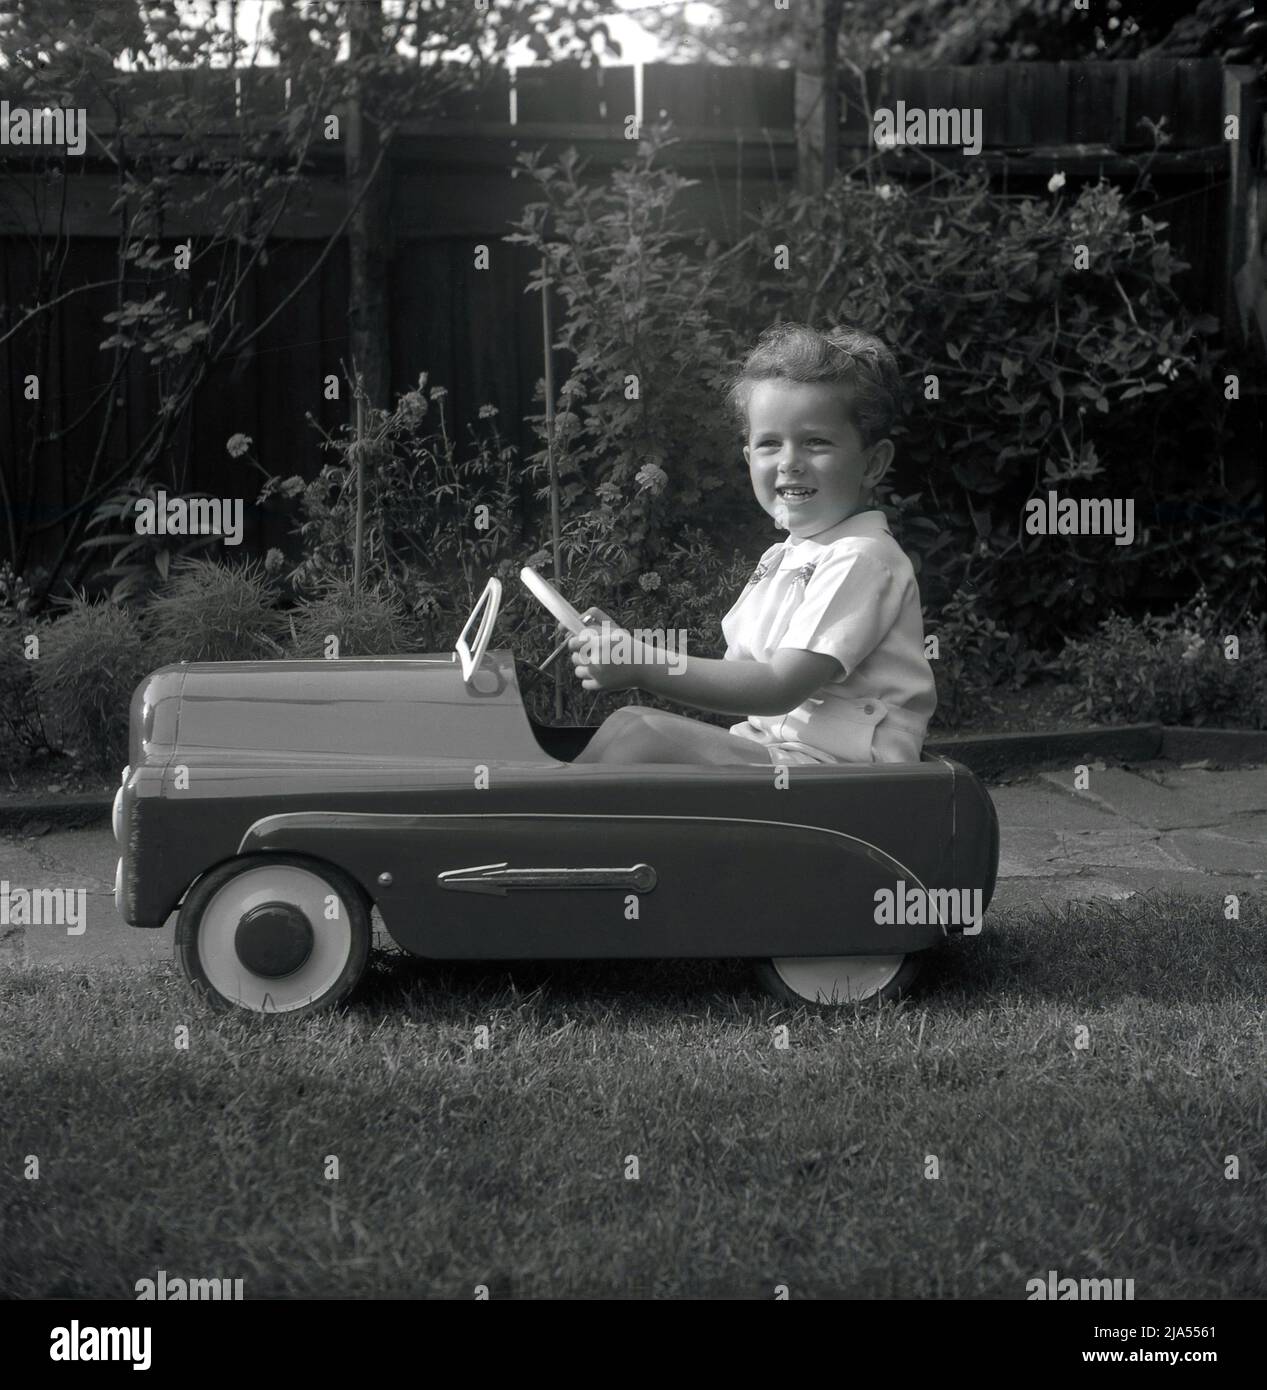 1953, historique, à l'extérieur d'un jardin, un jeune garçon assis dans son véhicule à pédales de l'époque, un britannique a fait Tri-Ang 'Thirty B'. En acier pressé, la voiture à jouets avait une finition émaillée très brillante, avec des flèches chromées sur le côté. Tri-Ang était la marque de Line Bros. Ltd, une entreprise britannique, qui était à cette époque la plus grande société de fabrication de chariots de jouets et de bébés au monde. Banque D'Images